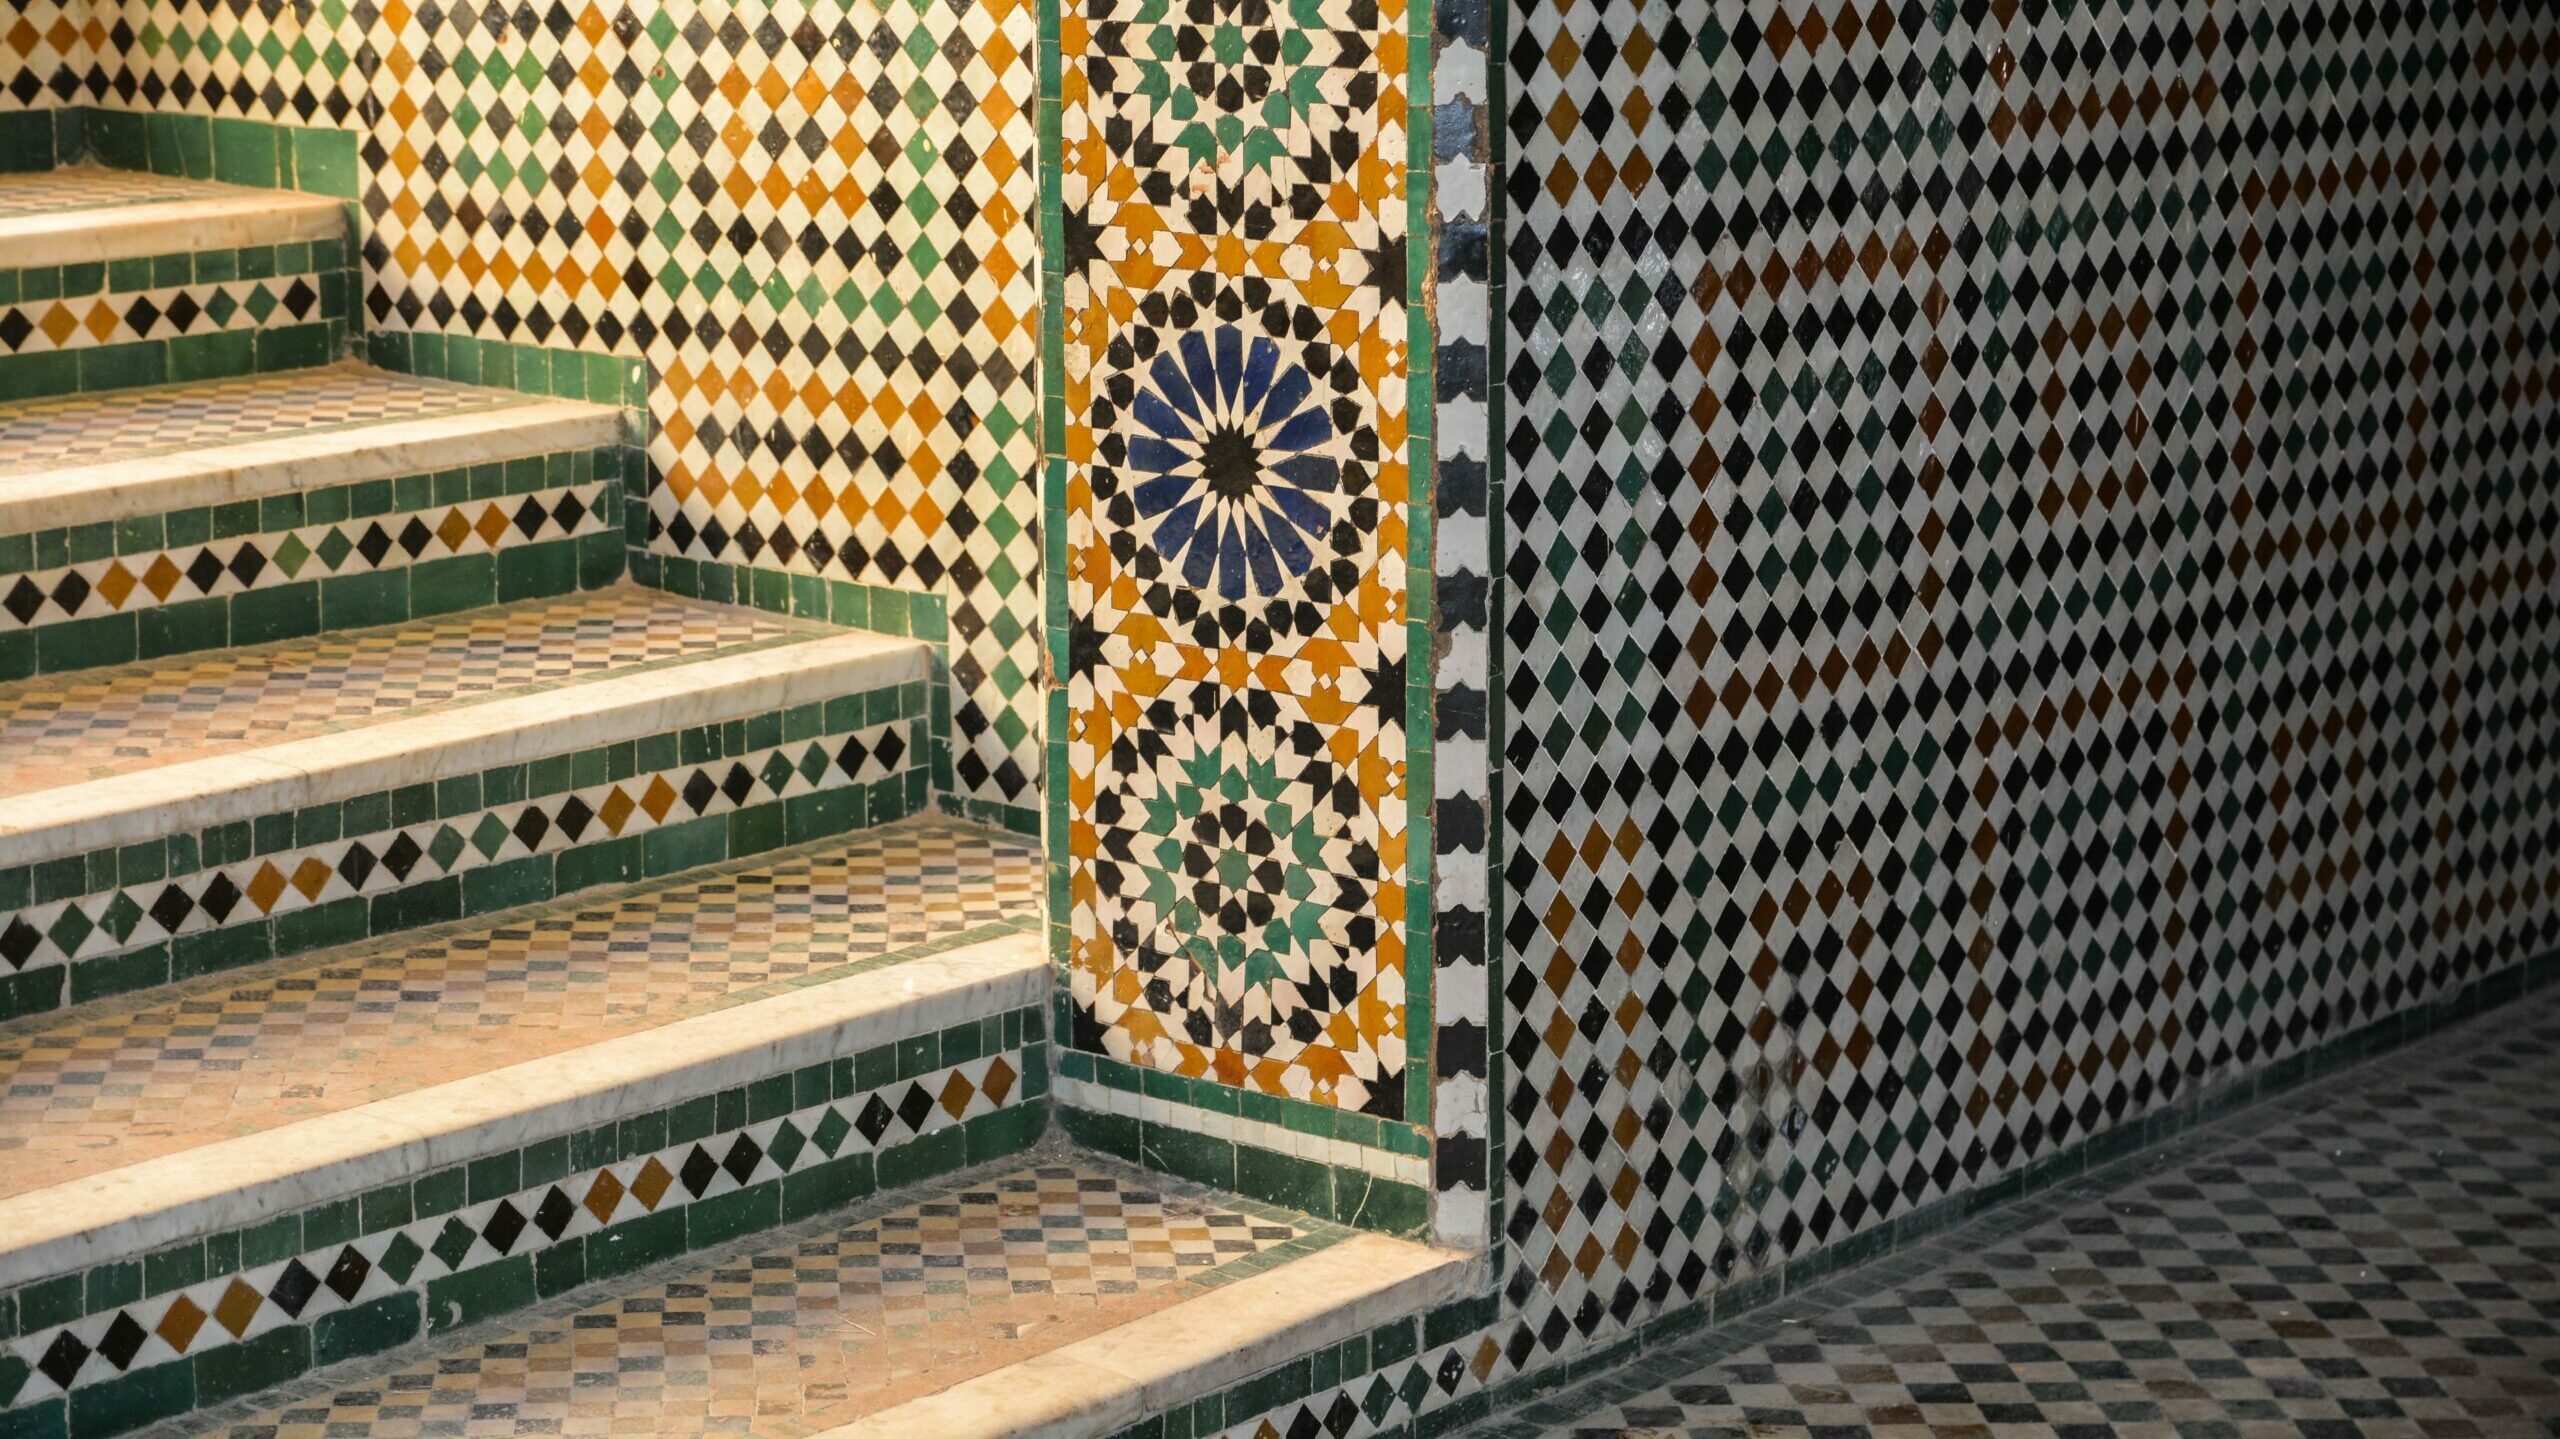 murs sol et escaliers revêtus en carrelage mosaïque après la rénovation intérieure